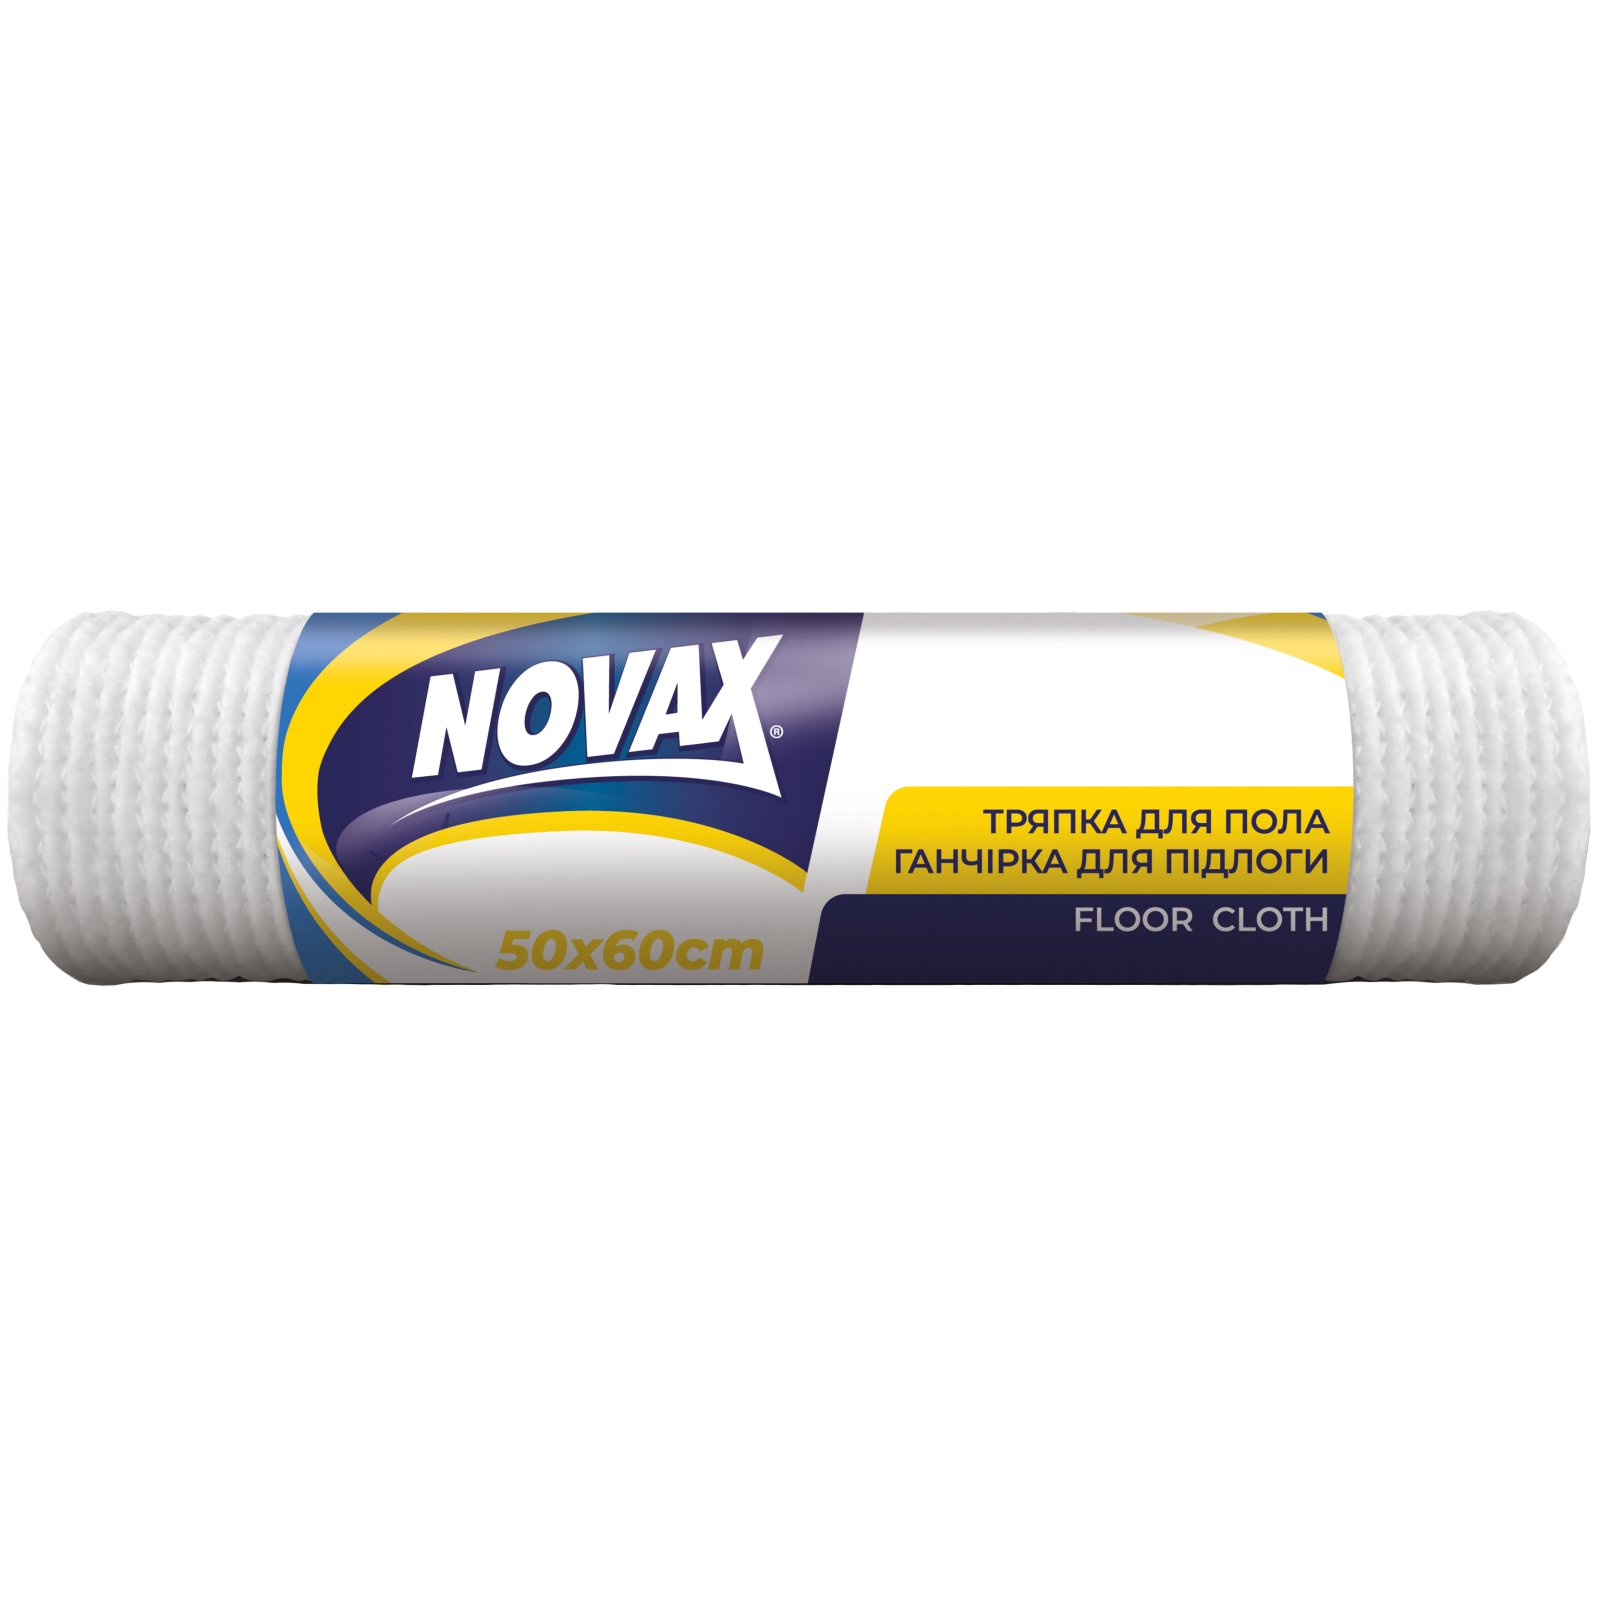 Ганчірка для підлоги Novax, 1 шт. - фото 1